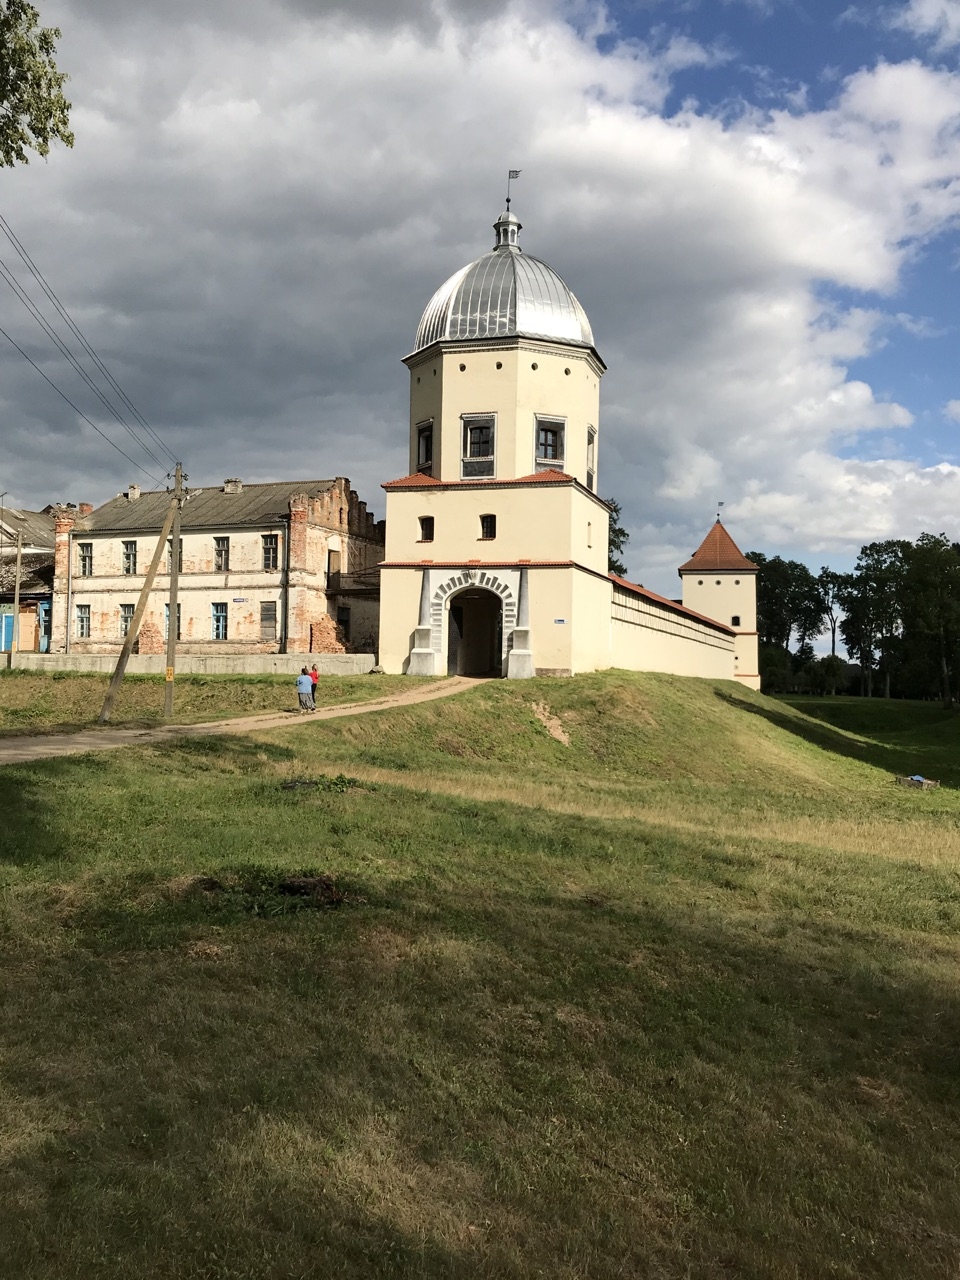 Въездная башня с гостевым павильоном. Любча, Беларусь